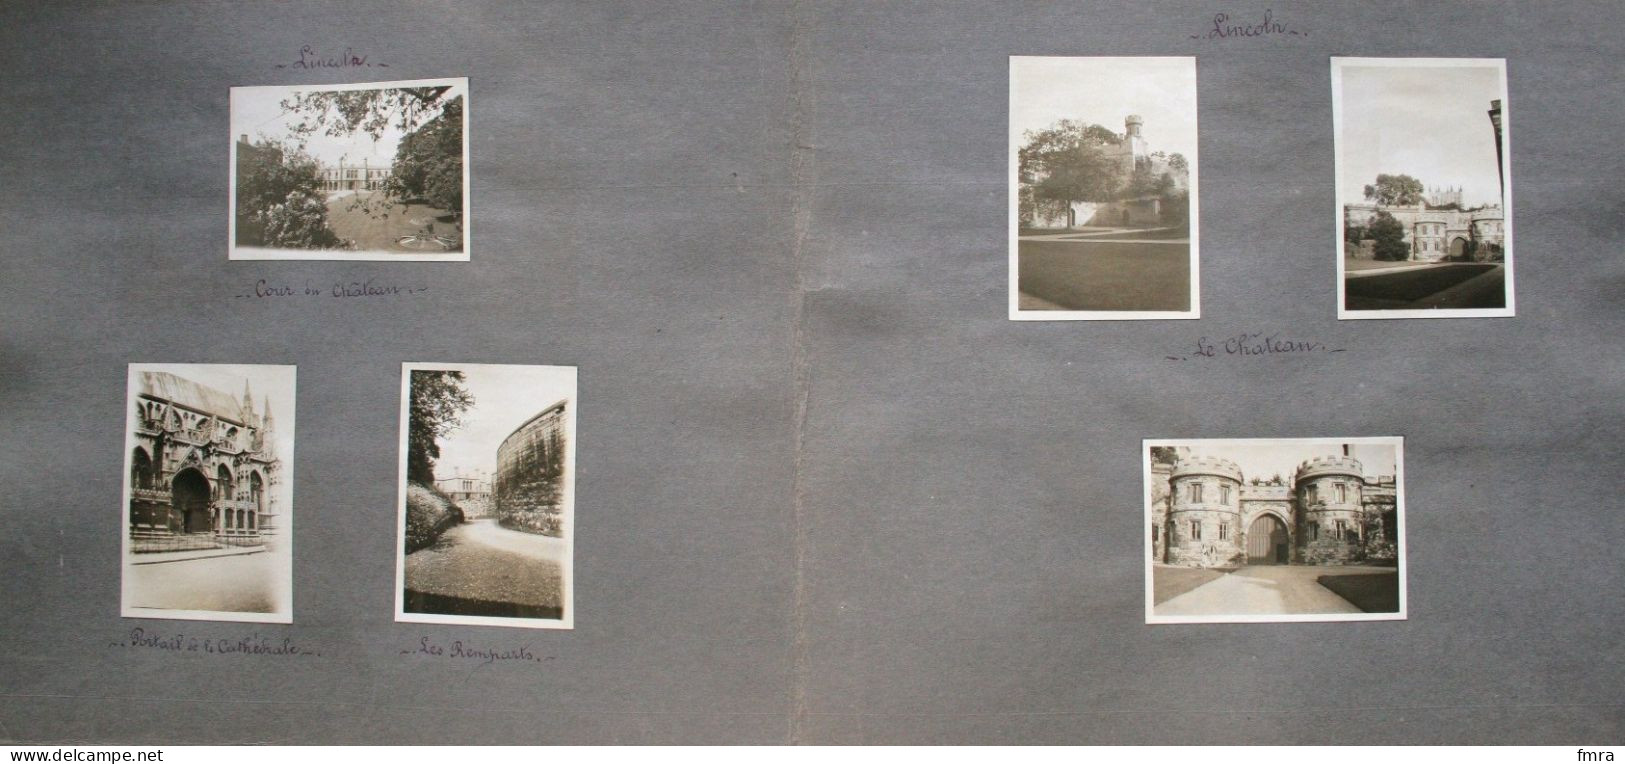 England 1928 – NOTTINGHAM  – Rufford Abbey – Londres – Ensemble de 66 photos 8,8 x 6 cm (***à voir 11 scans***) /GP87